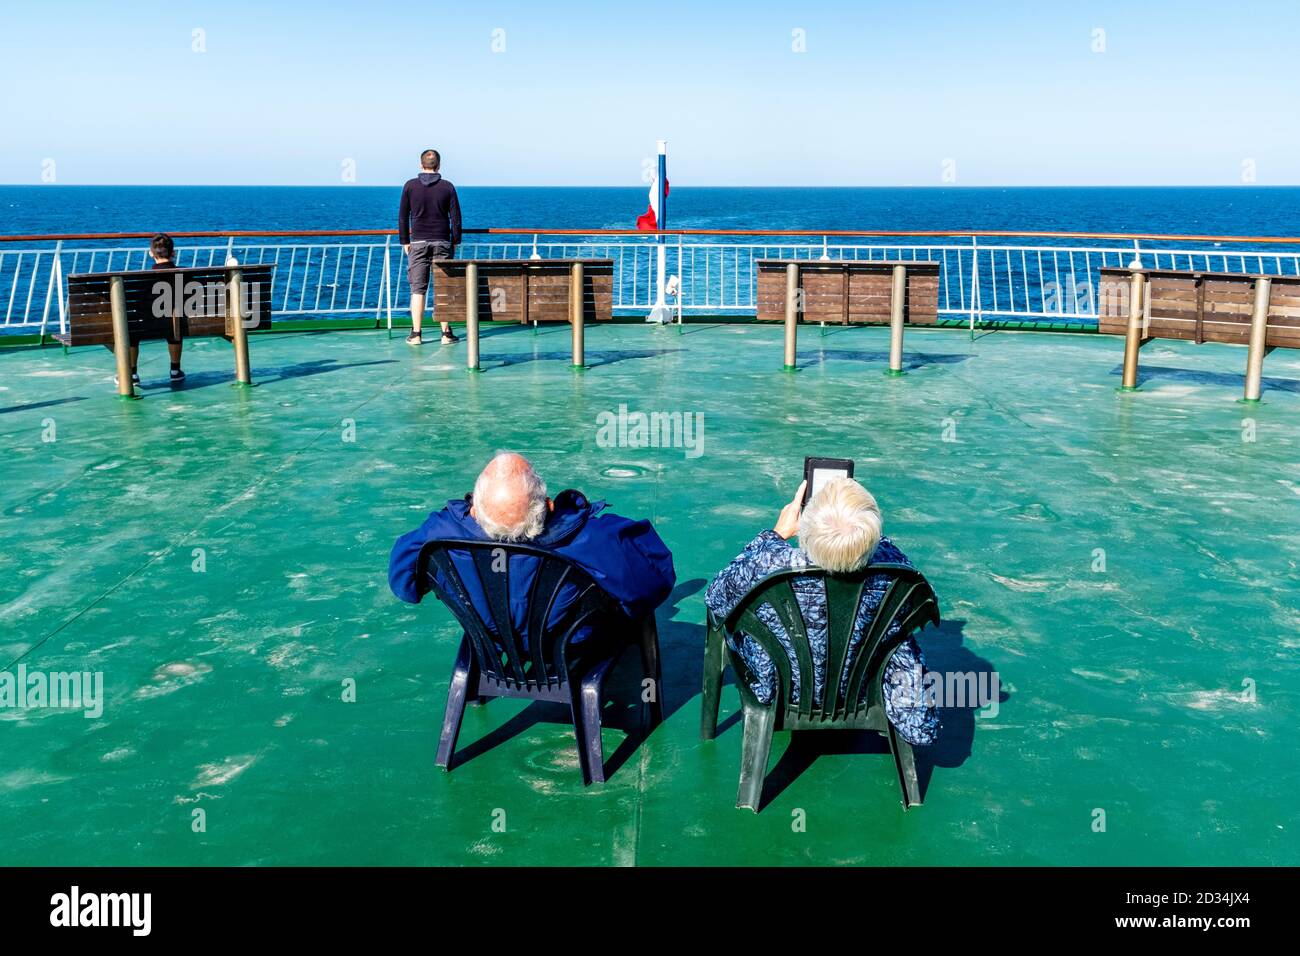 Persone che si rilassano su UN Newhaven a Dieppe Cross Channel Ferry, canale inglese, Regno Unito. Foto Stock